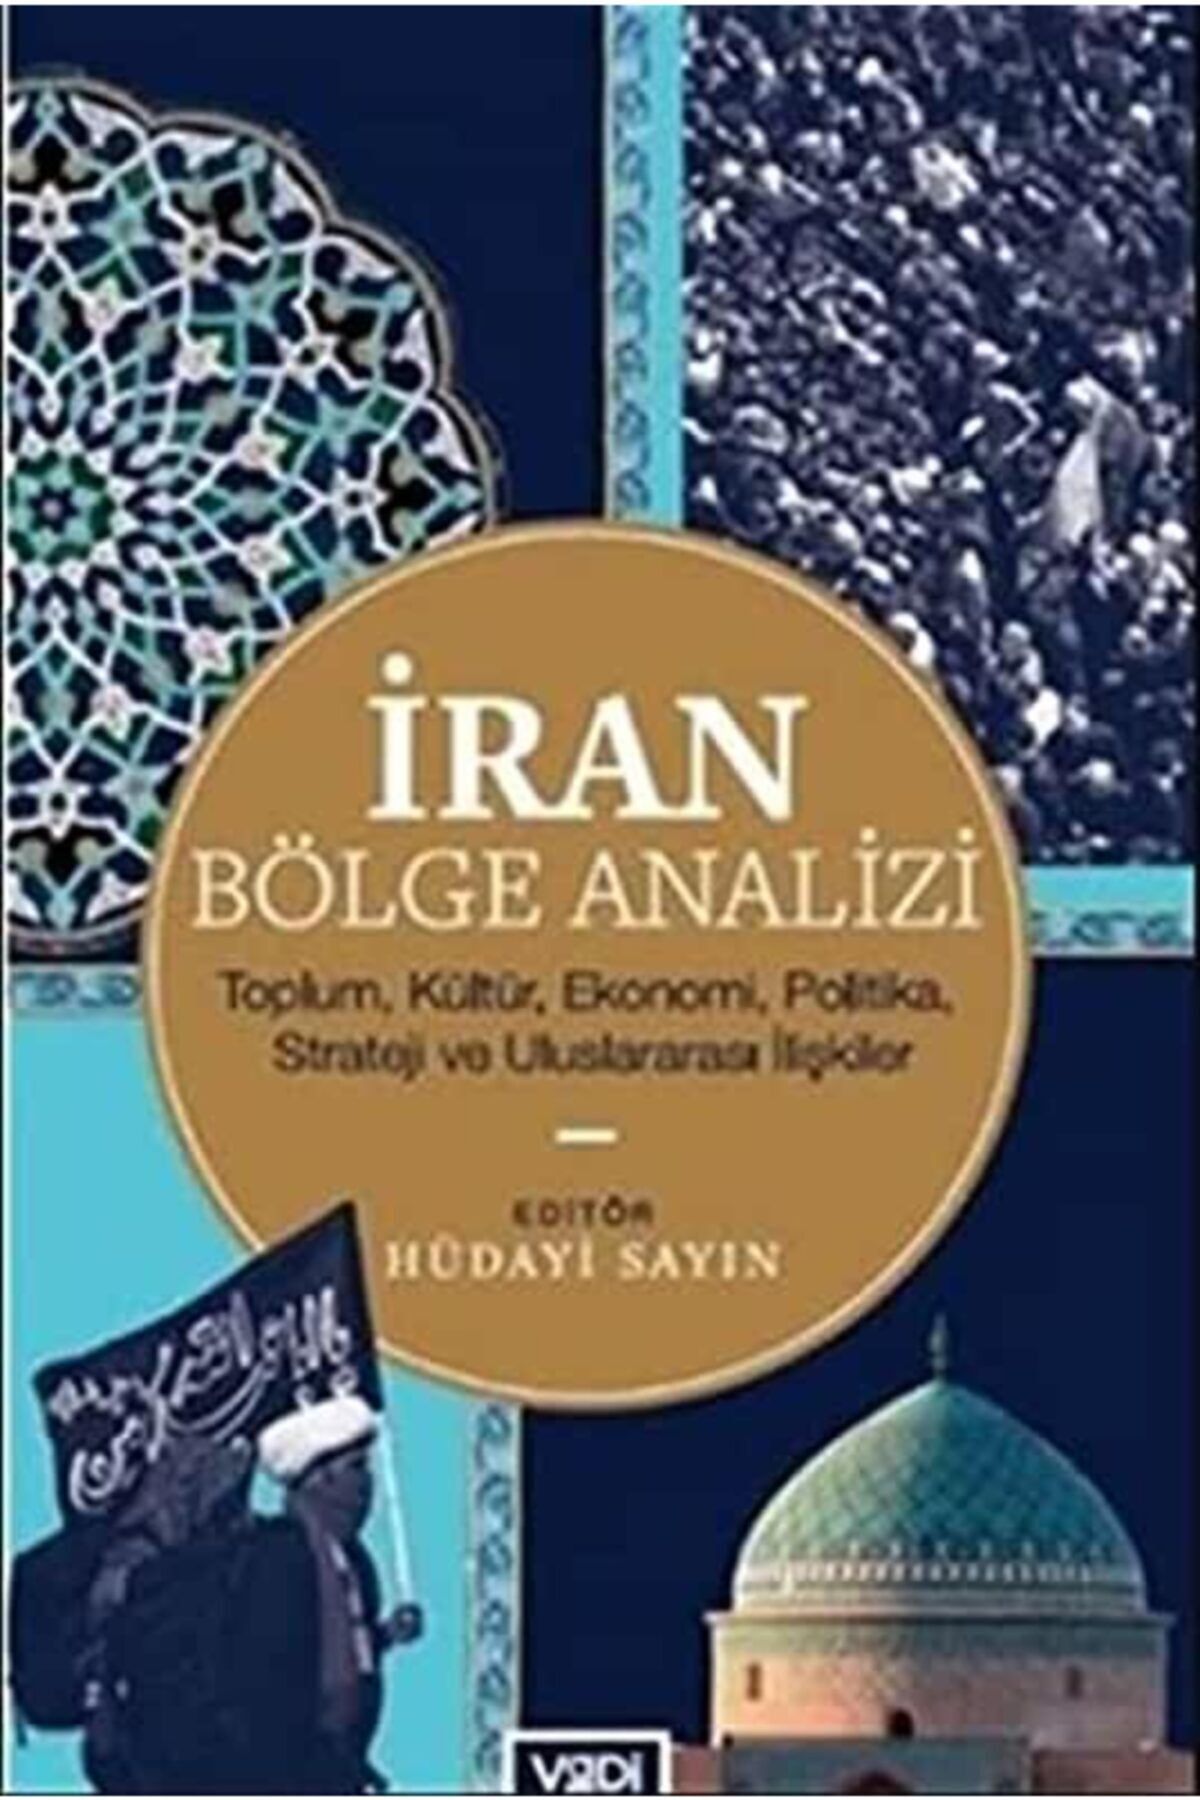 Vadi Yayınları Iran Bölge Analizi - Toplum, Kültür, Ekonomi, Politika, Strateji Ve Uluslararası Ilişkiler